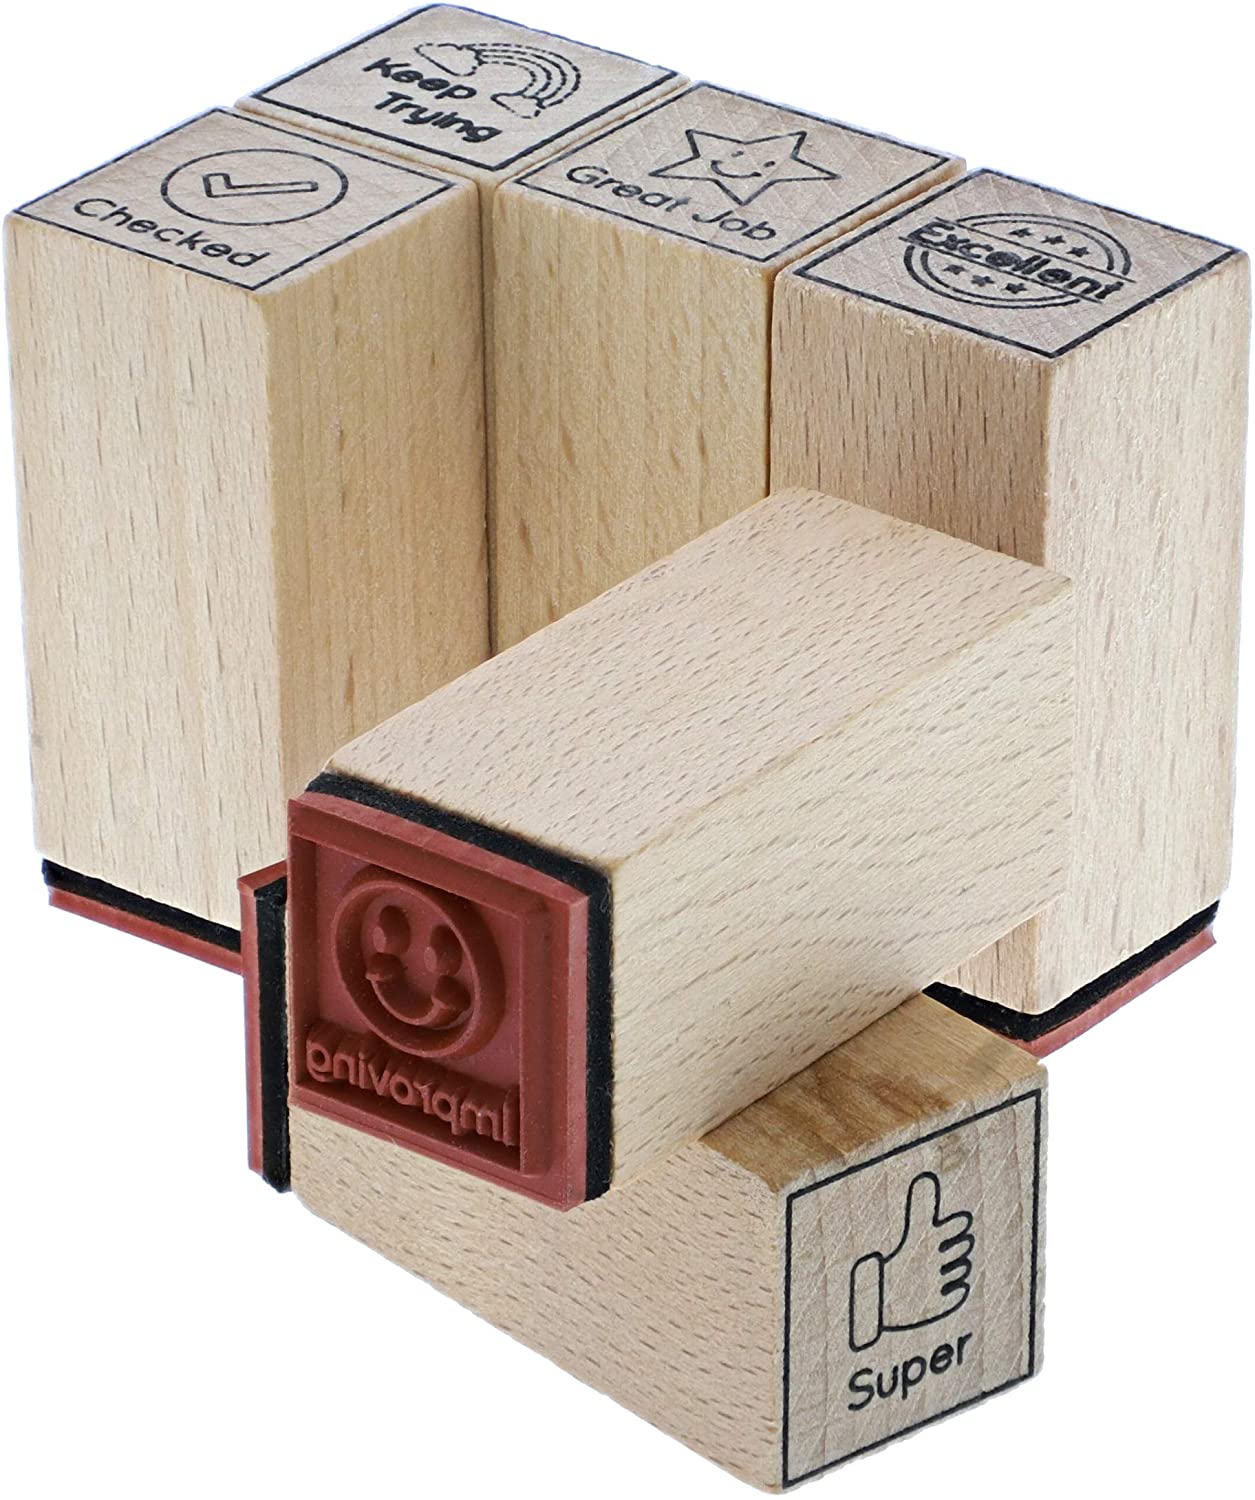 Juego de 9 sellos de goma de madera para profesores, suministros para el  aula para calificar tareas (tamaños surtidos)